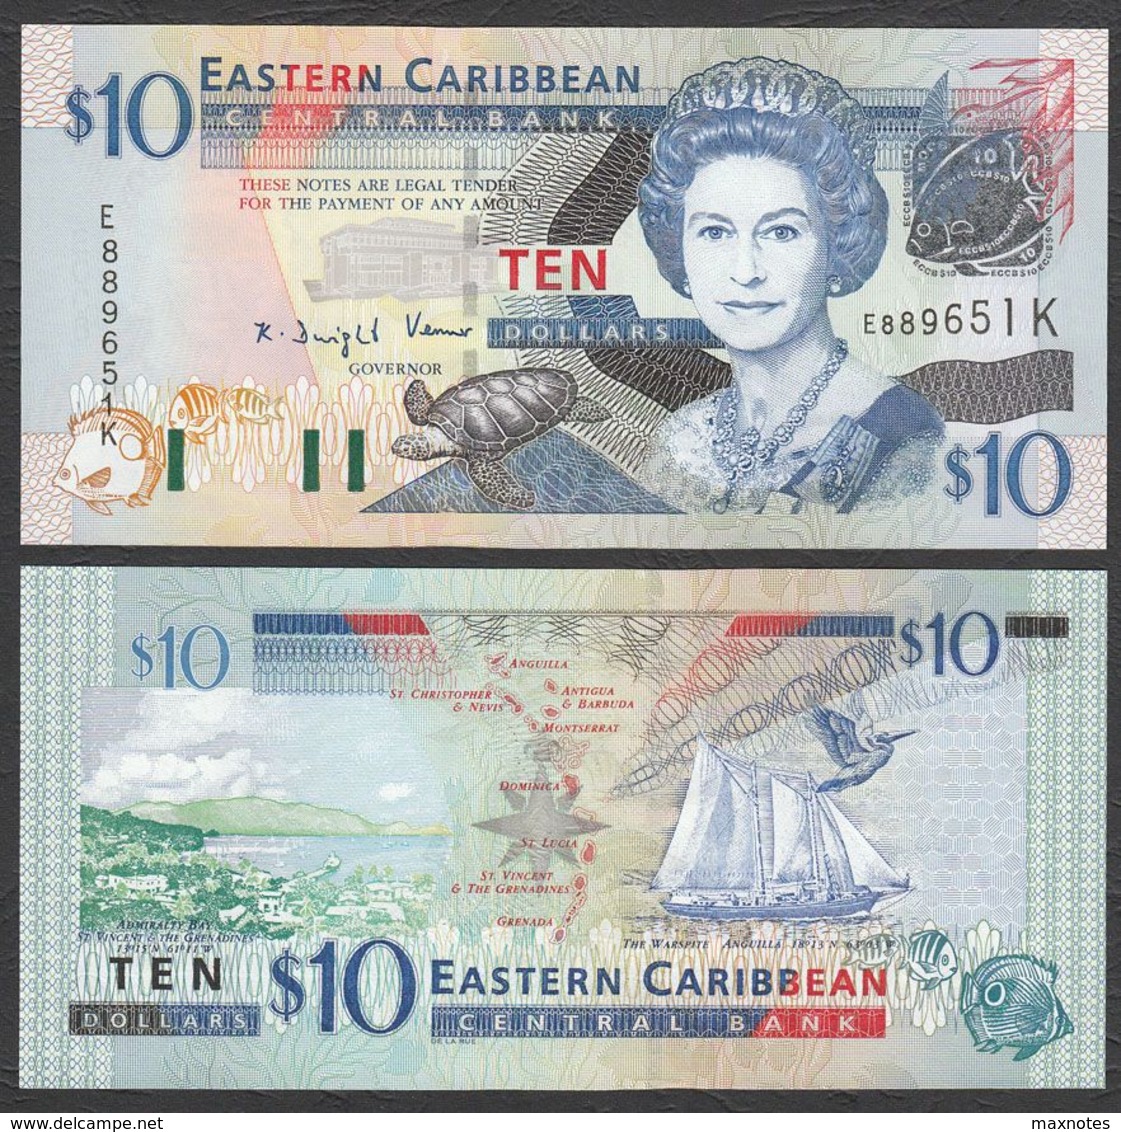 CARAIBI ORIENTALE (EASTERN CARIBBEAN) : 10 Dollars - P43k - St. KITTS - Queen Elisabeth II - 2003 - UNC - Caraïbes Orientales